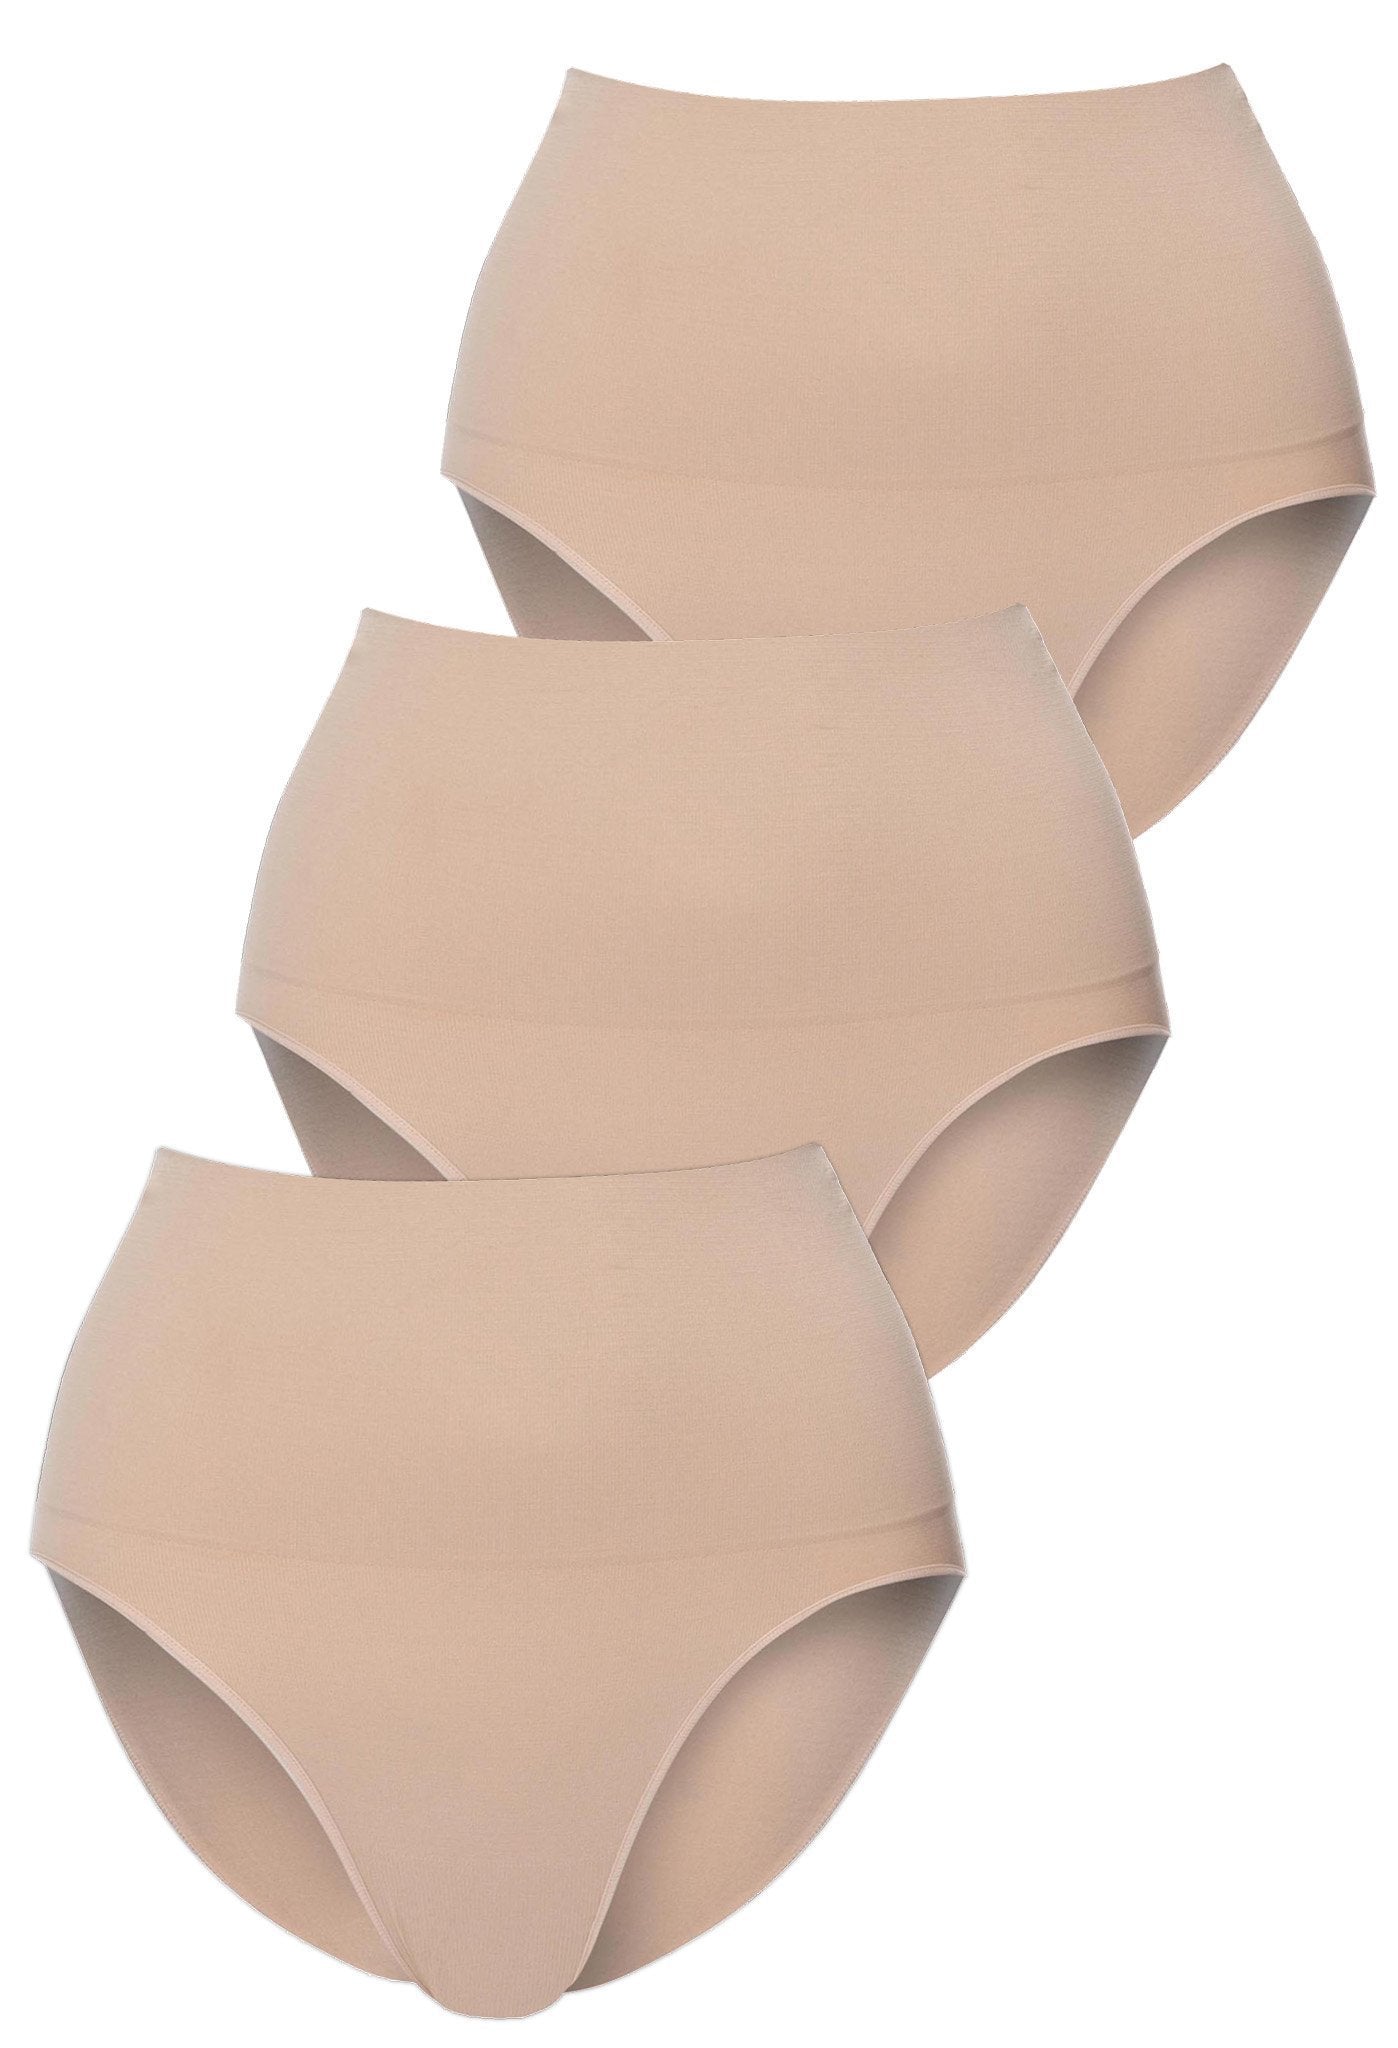 6 Pk Seamless High Waist Briefs Womens Underwear Panties Girdles